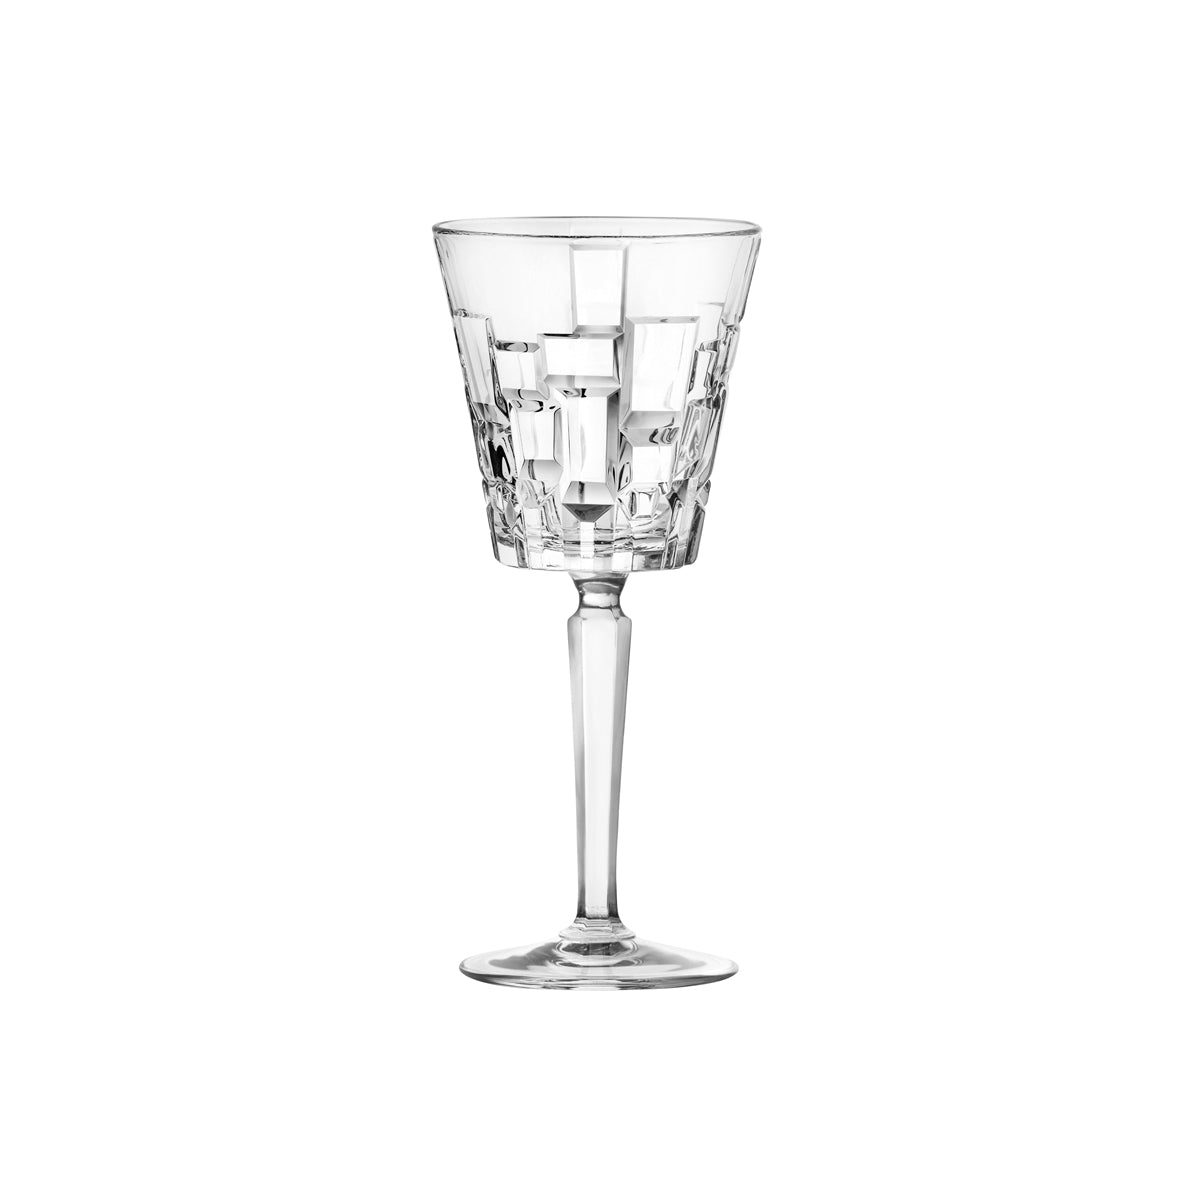 RCR363-903 RCR Cristalleria Etna White Wine 200ml Tomkin Australia Hospitality Supplies